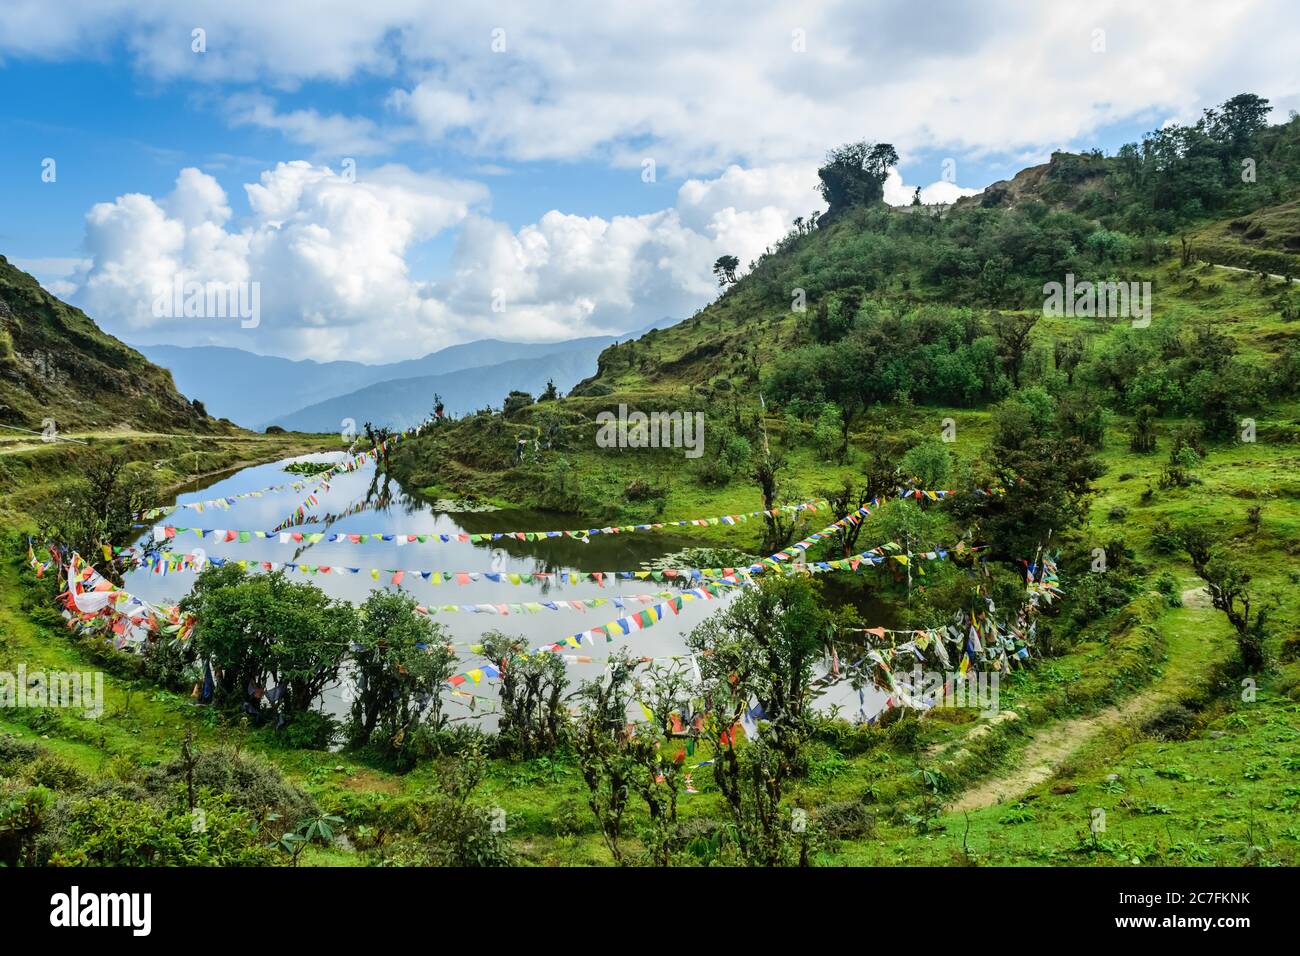 Eine Landschaft eines berühmten indischen Himalaya-Sees in Nepal Grenze Stockfoto